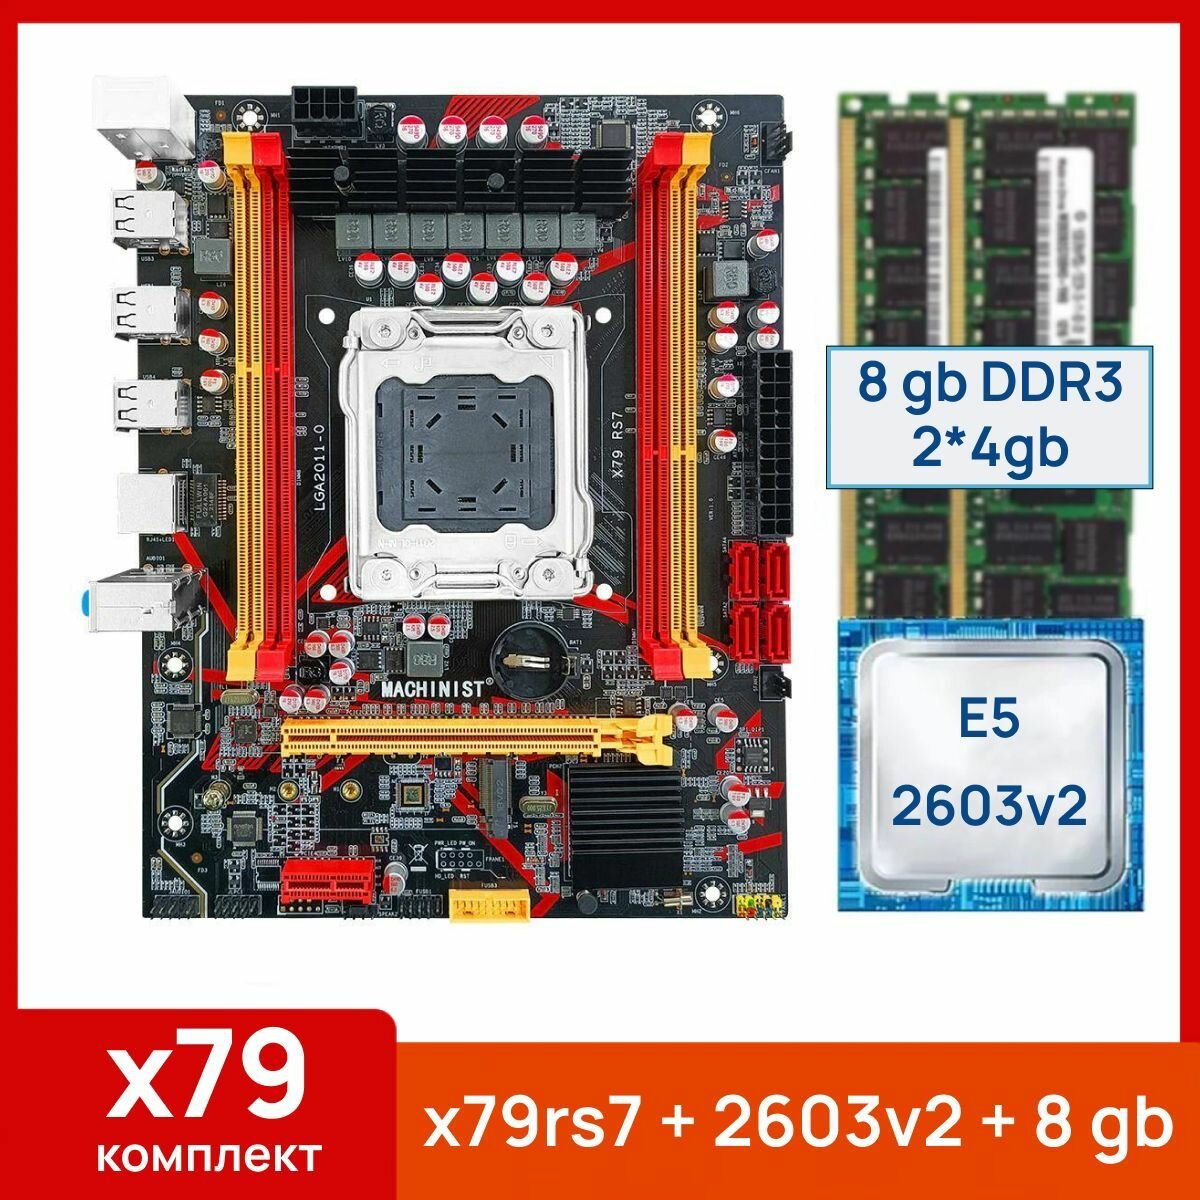 Комплект: Материнская плата Machinist RS-7 + Процессор Xeon E5 2603v2 + 8 gb(2x4gb) DDR3 серверная